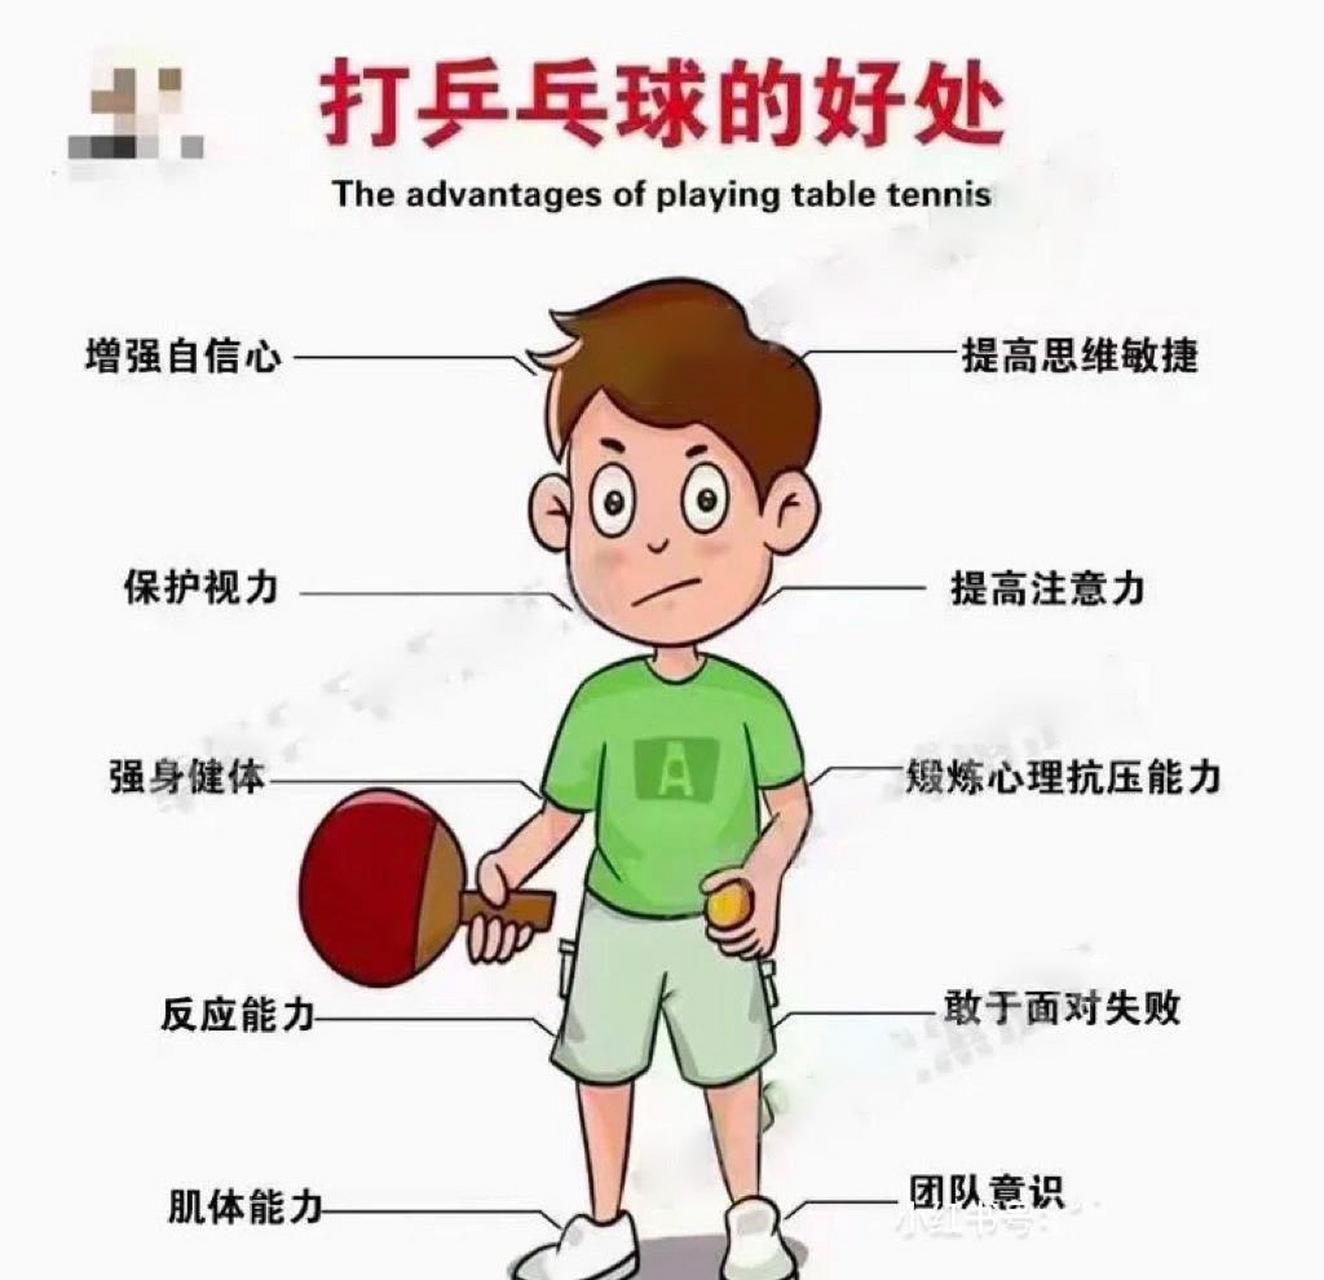 打乒乓球可以起到全身锻炼,在打乒乓球的时候通过上肢的摆动和腰部